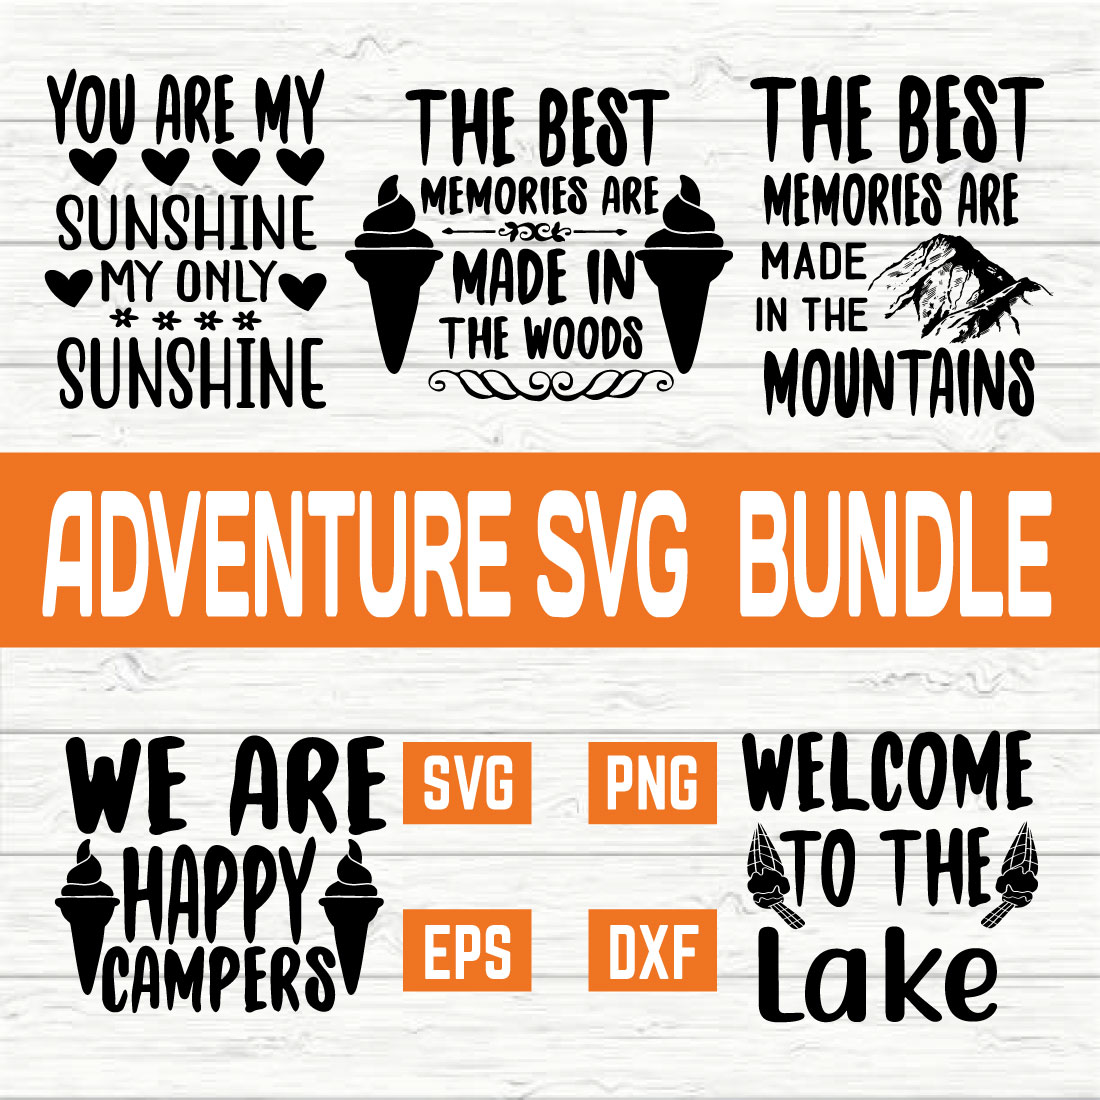 Adventure Svg Bundle vol 8 preview image.